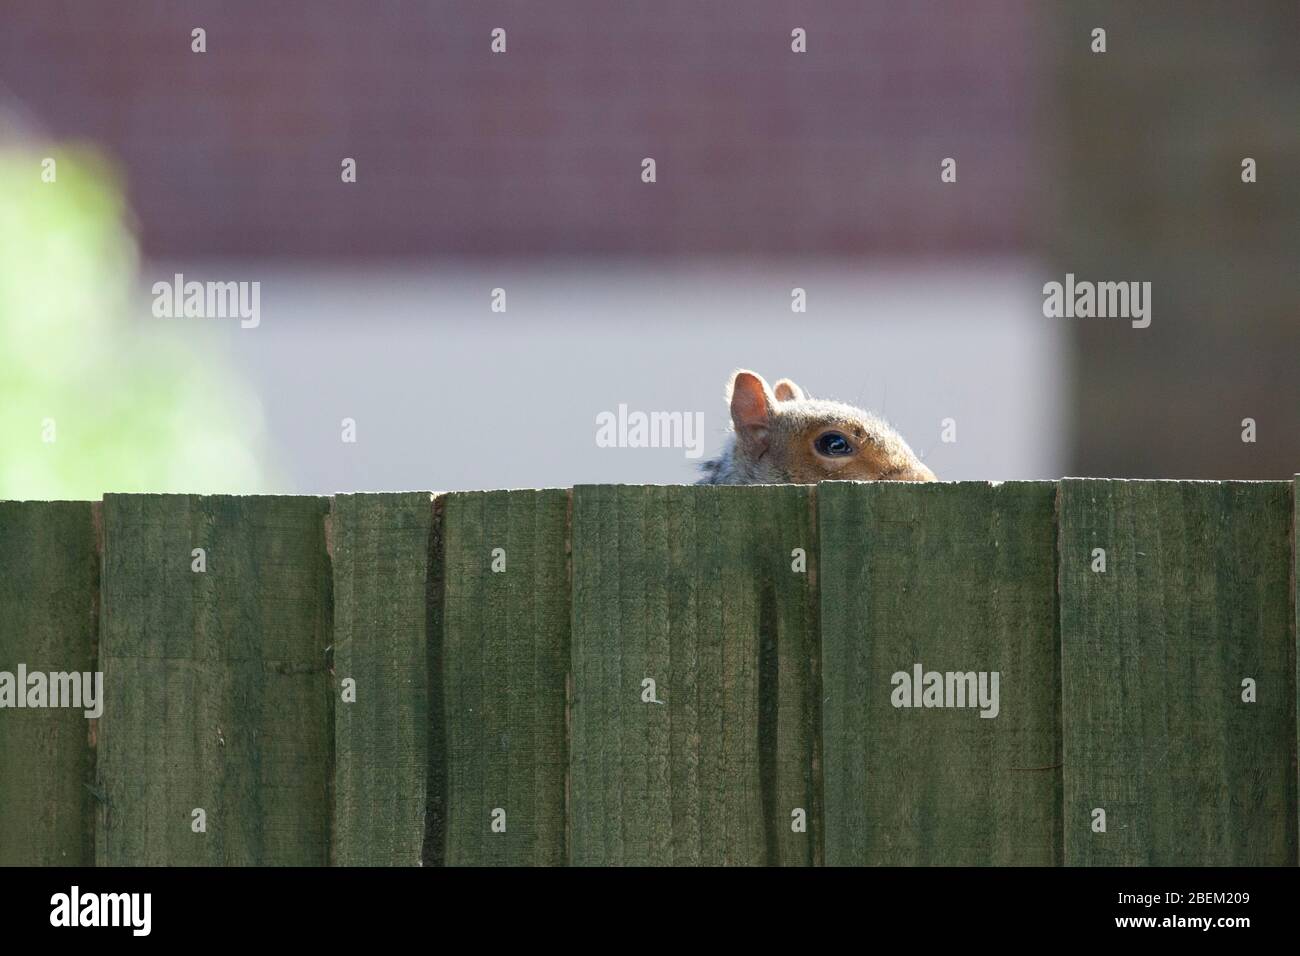 Londres, Royaume-Uni. 14 avril 2020. Météo britannique, 14 avril 2020: Un écureuil gris dans la banlieue de Lnodon de Clapham joue PEEK-a-boo avec le photographe de derrière une clôture. Anna Watson/Alay Live News Banque D'Images